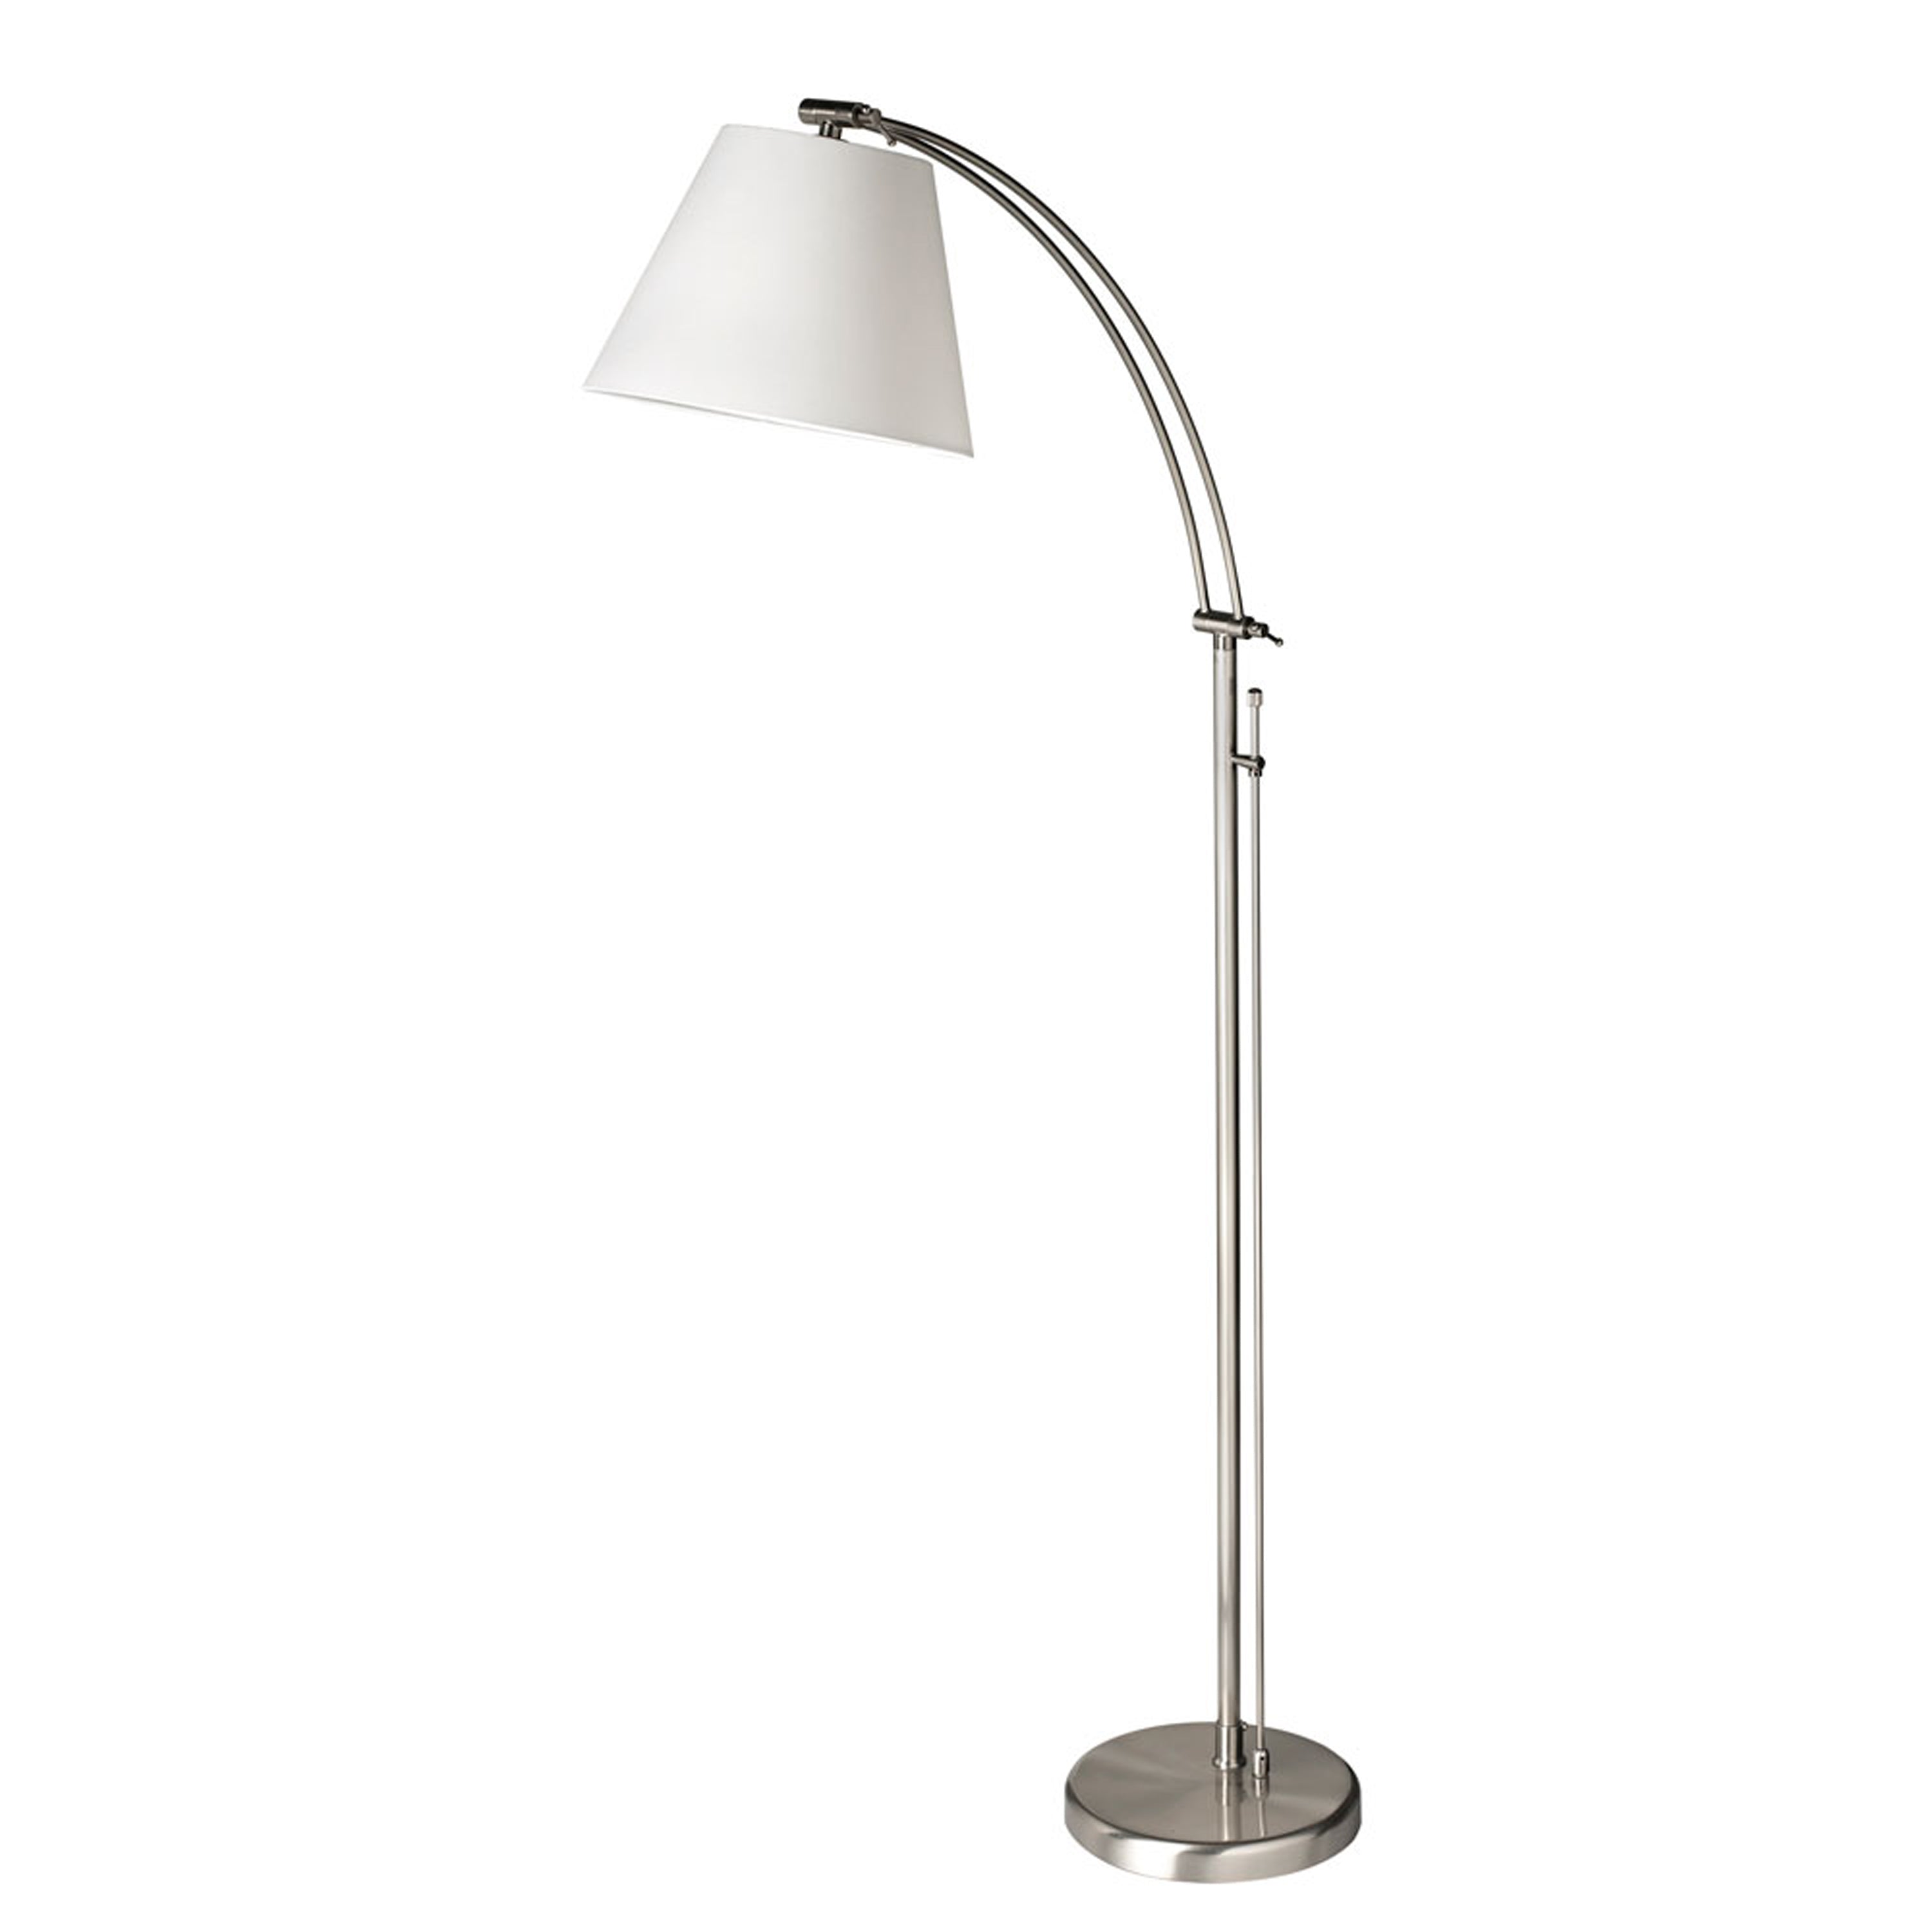 Floor lamp Chrome - DM2578-F-SC | DAINOLITE